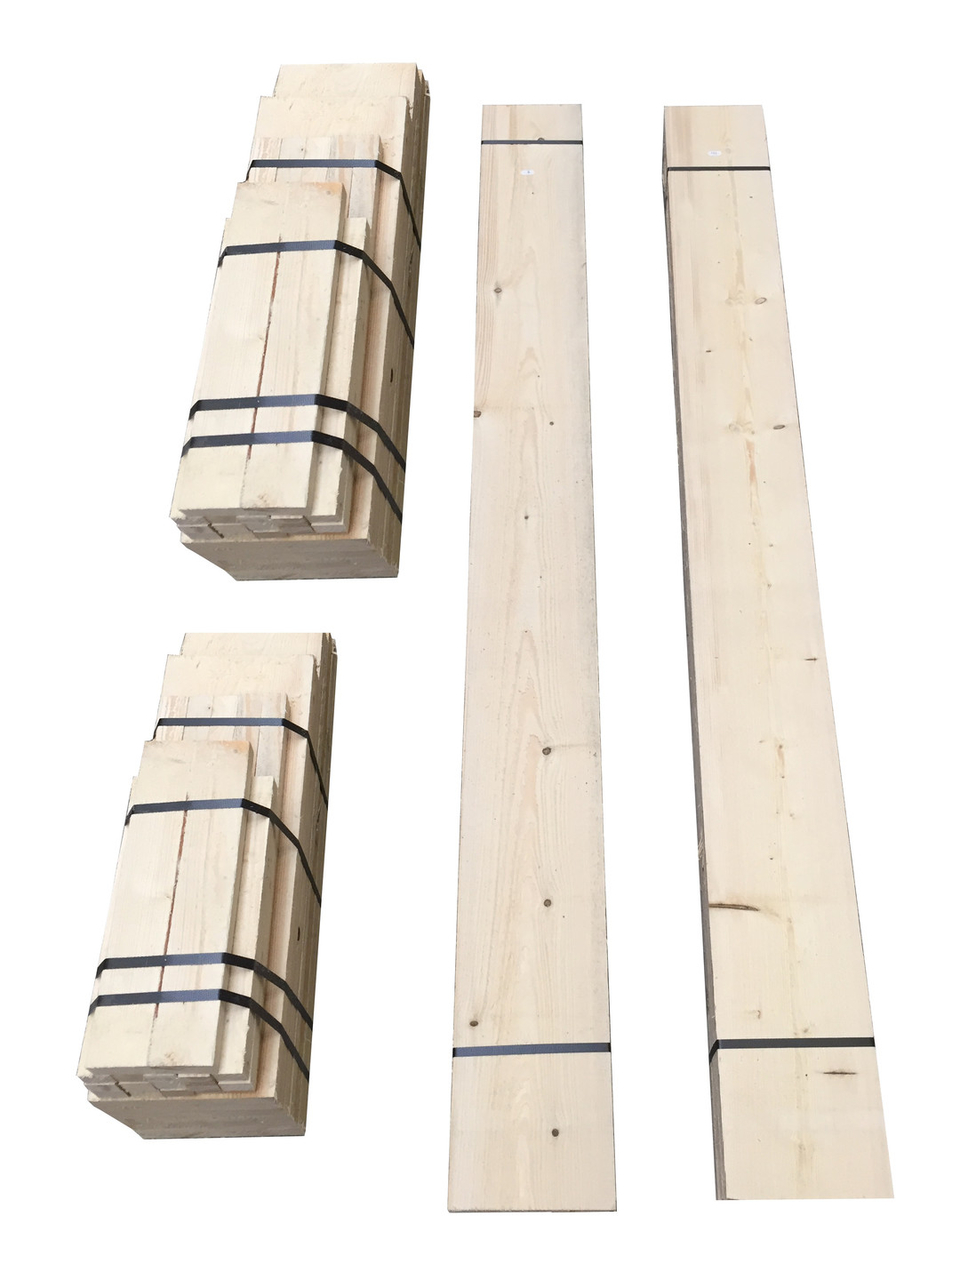 Barbecue meubel bouwpakket - xsteigerhout